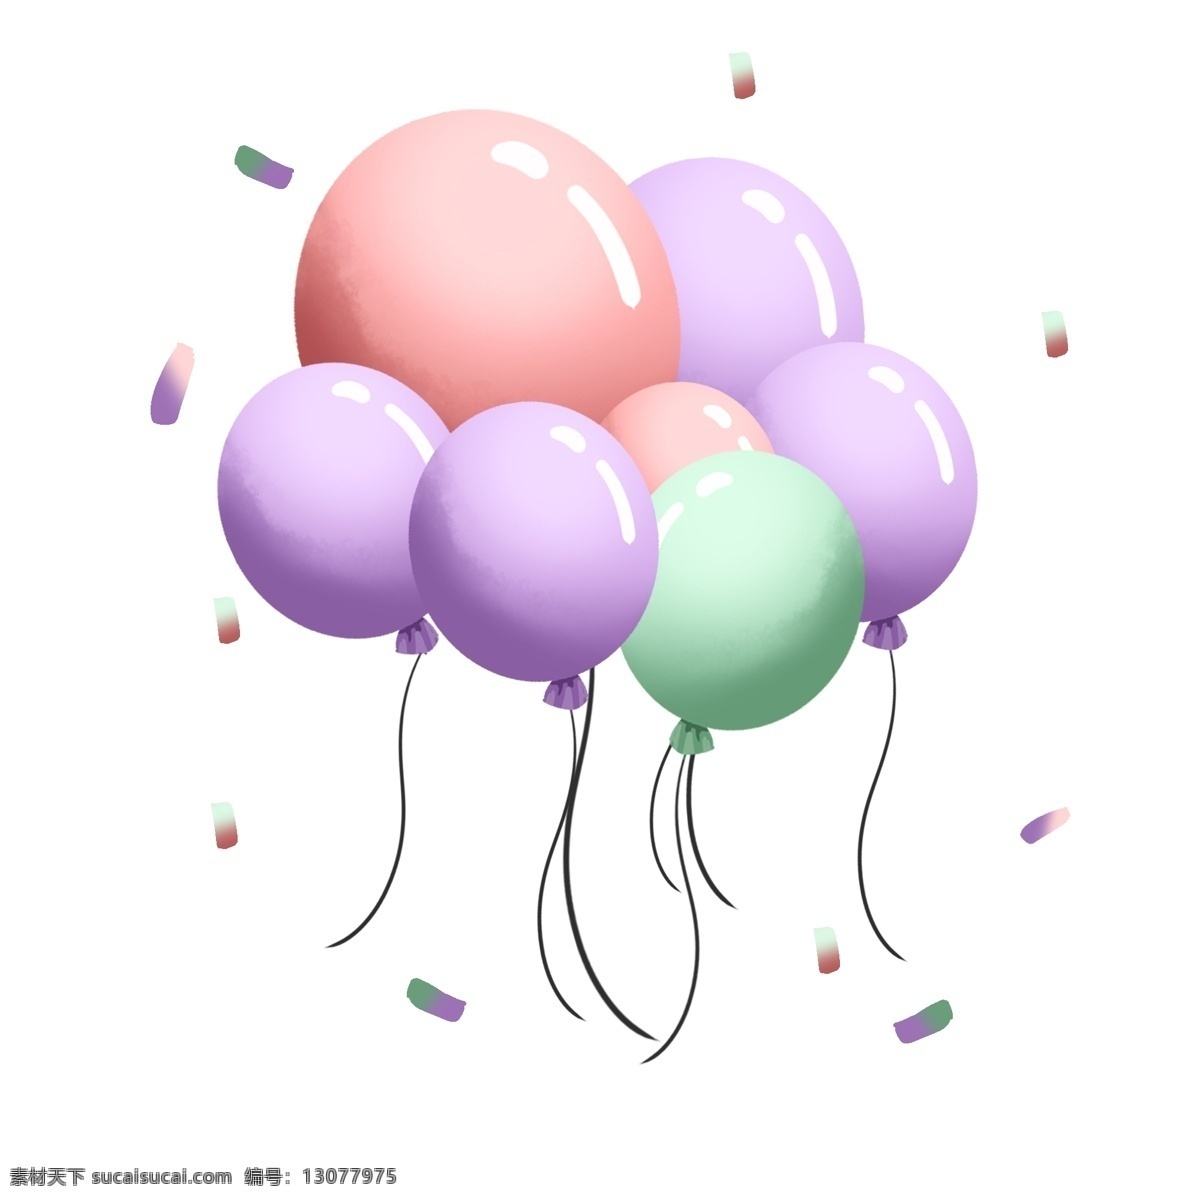 漂浮 手绘 卡通 可爱 糖果 色 梦幻 气球 元素 糖果色